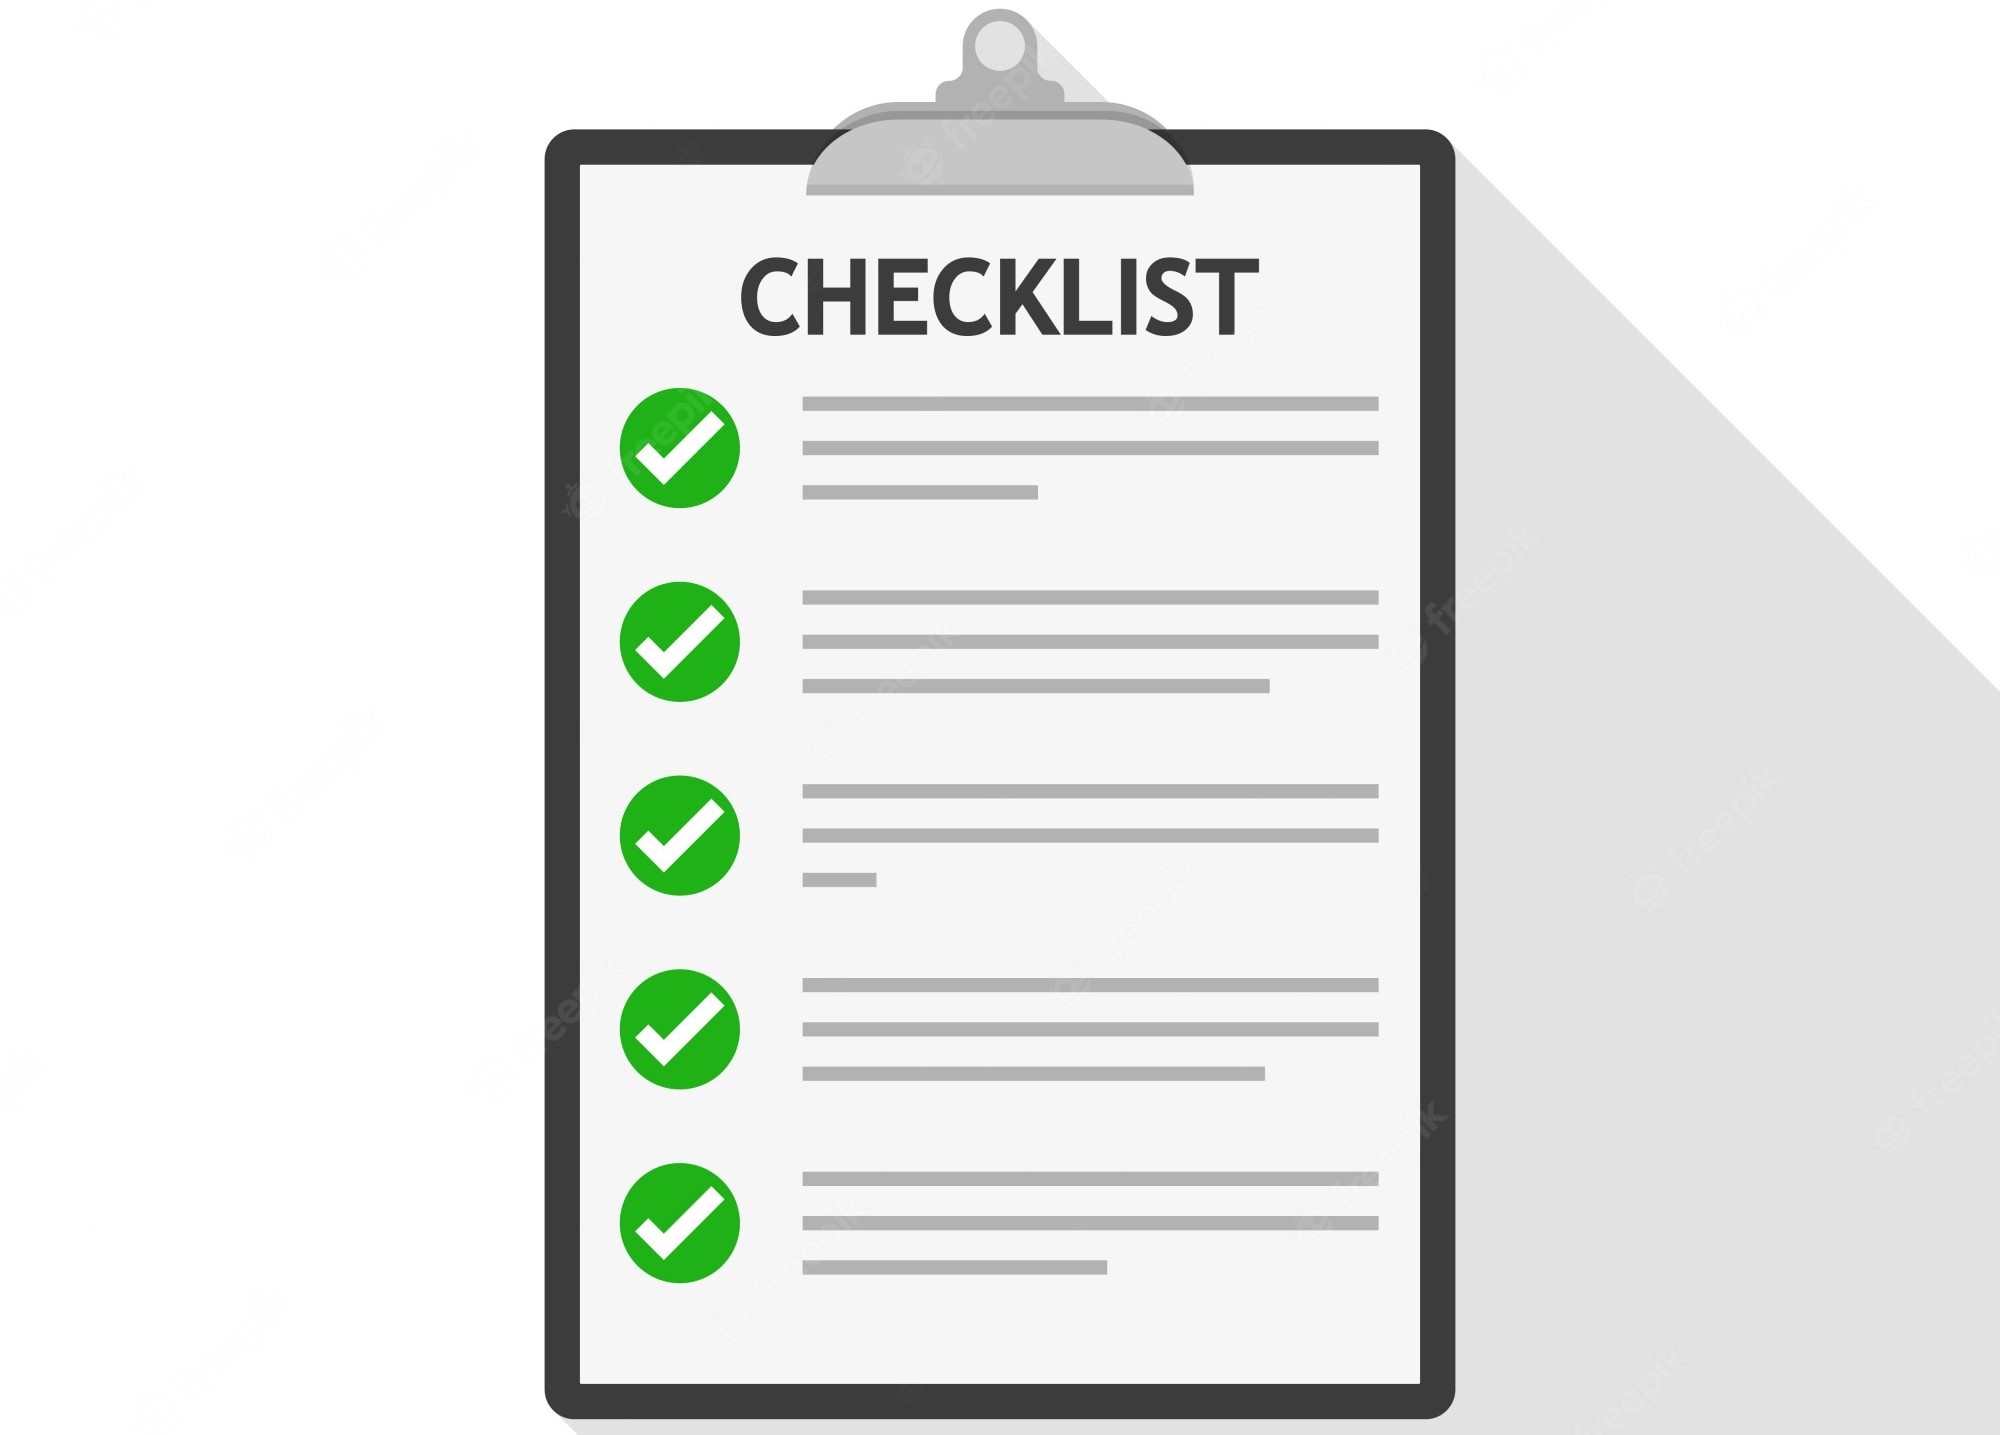 checklist-illustration_118339-403